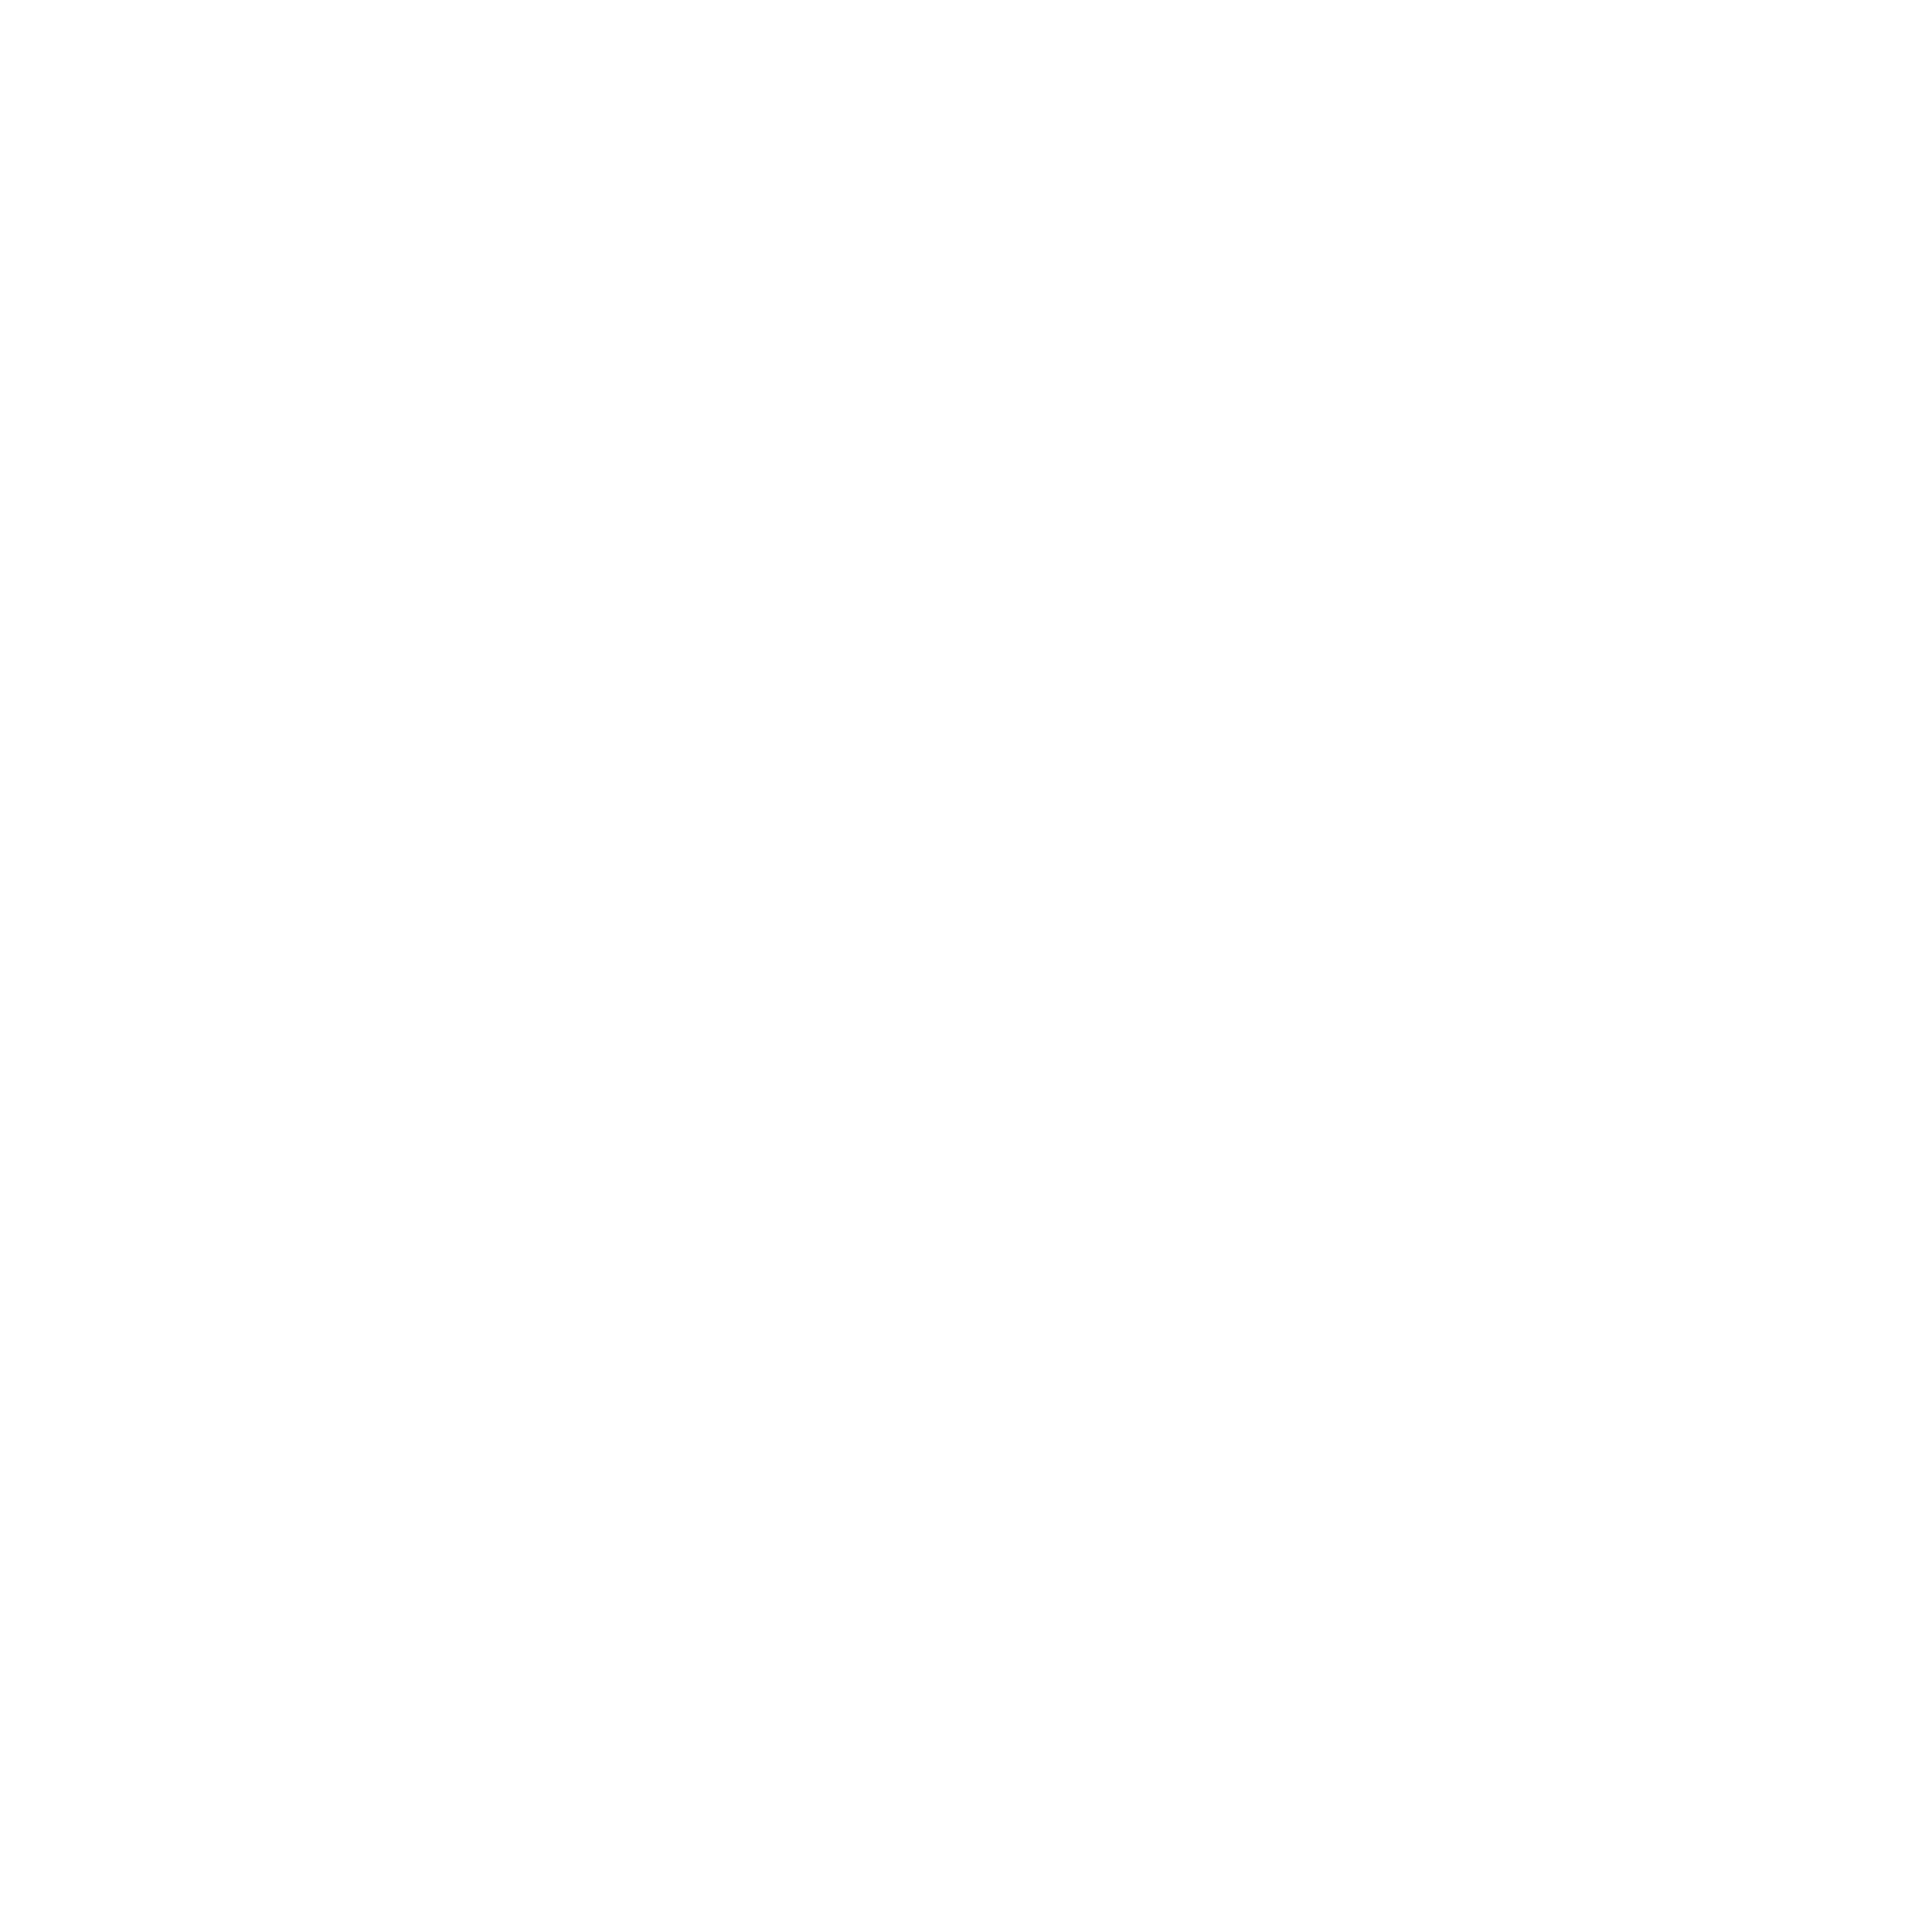 Freshmaker logo - white